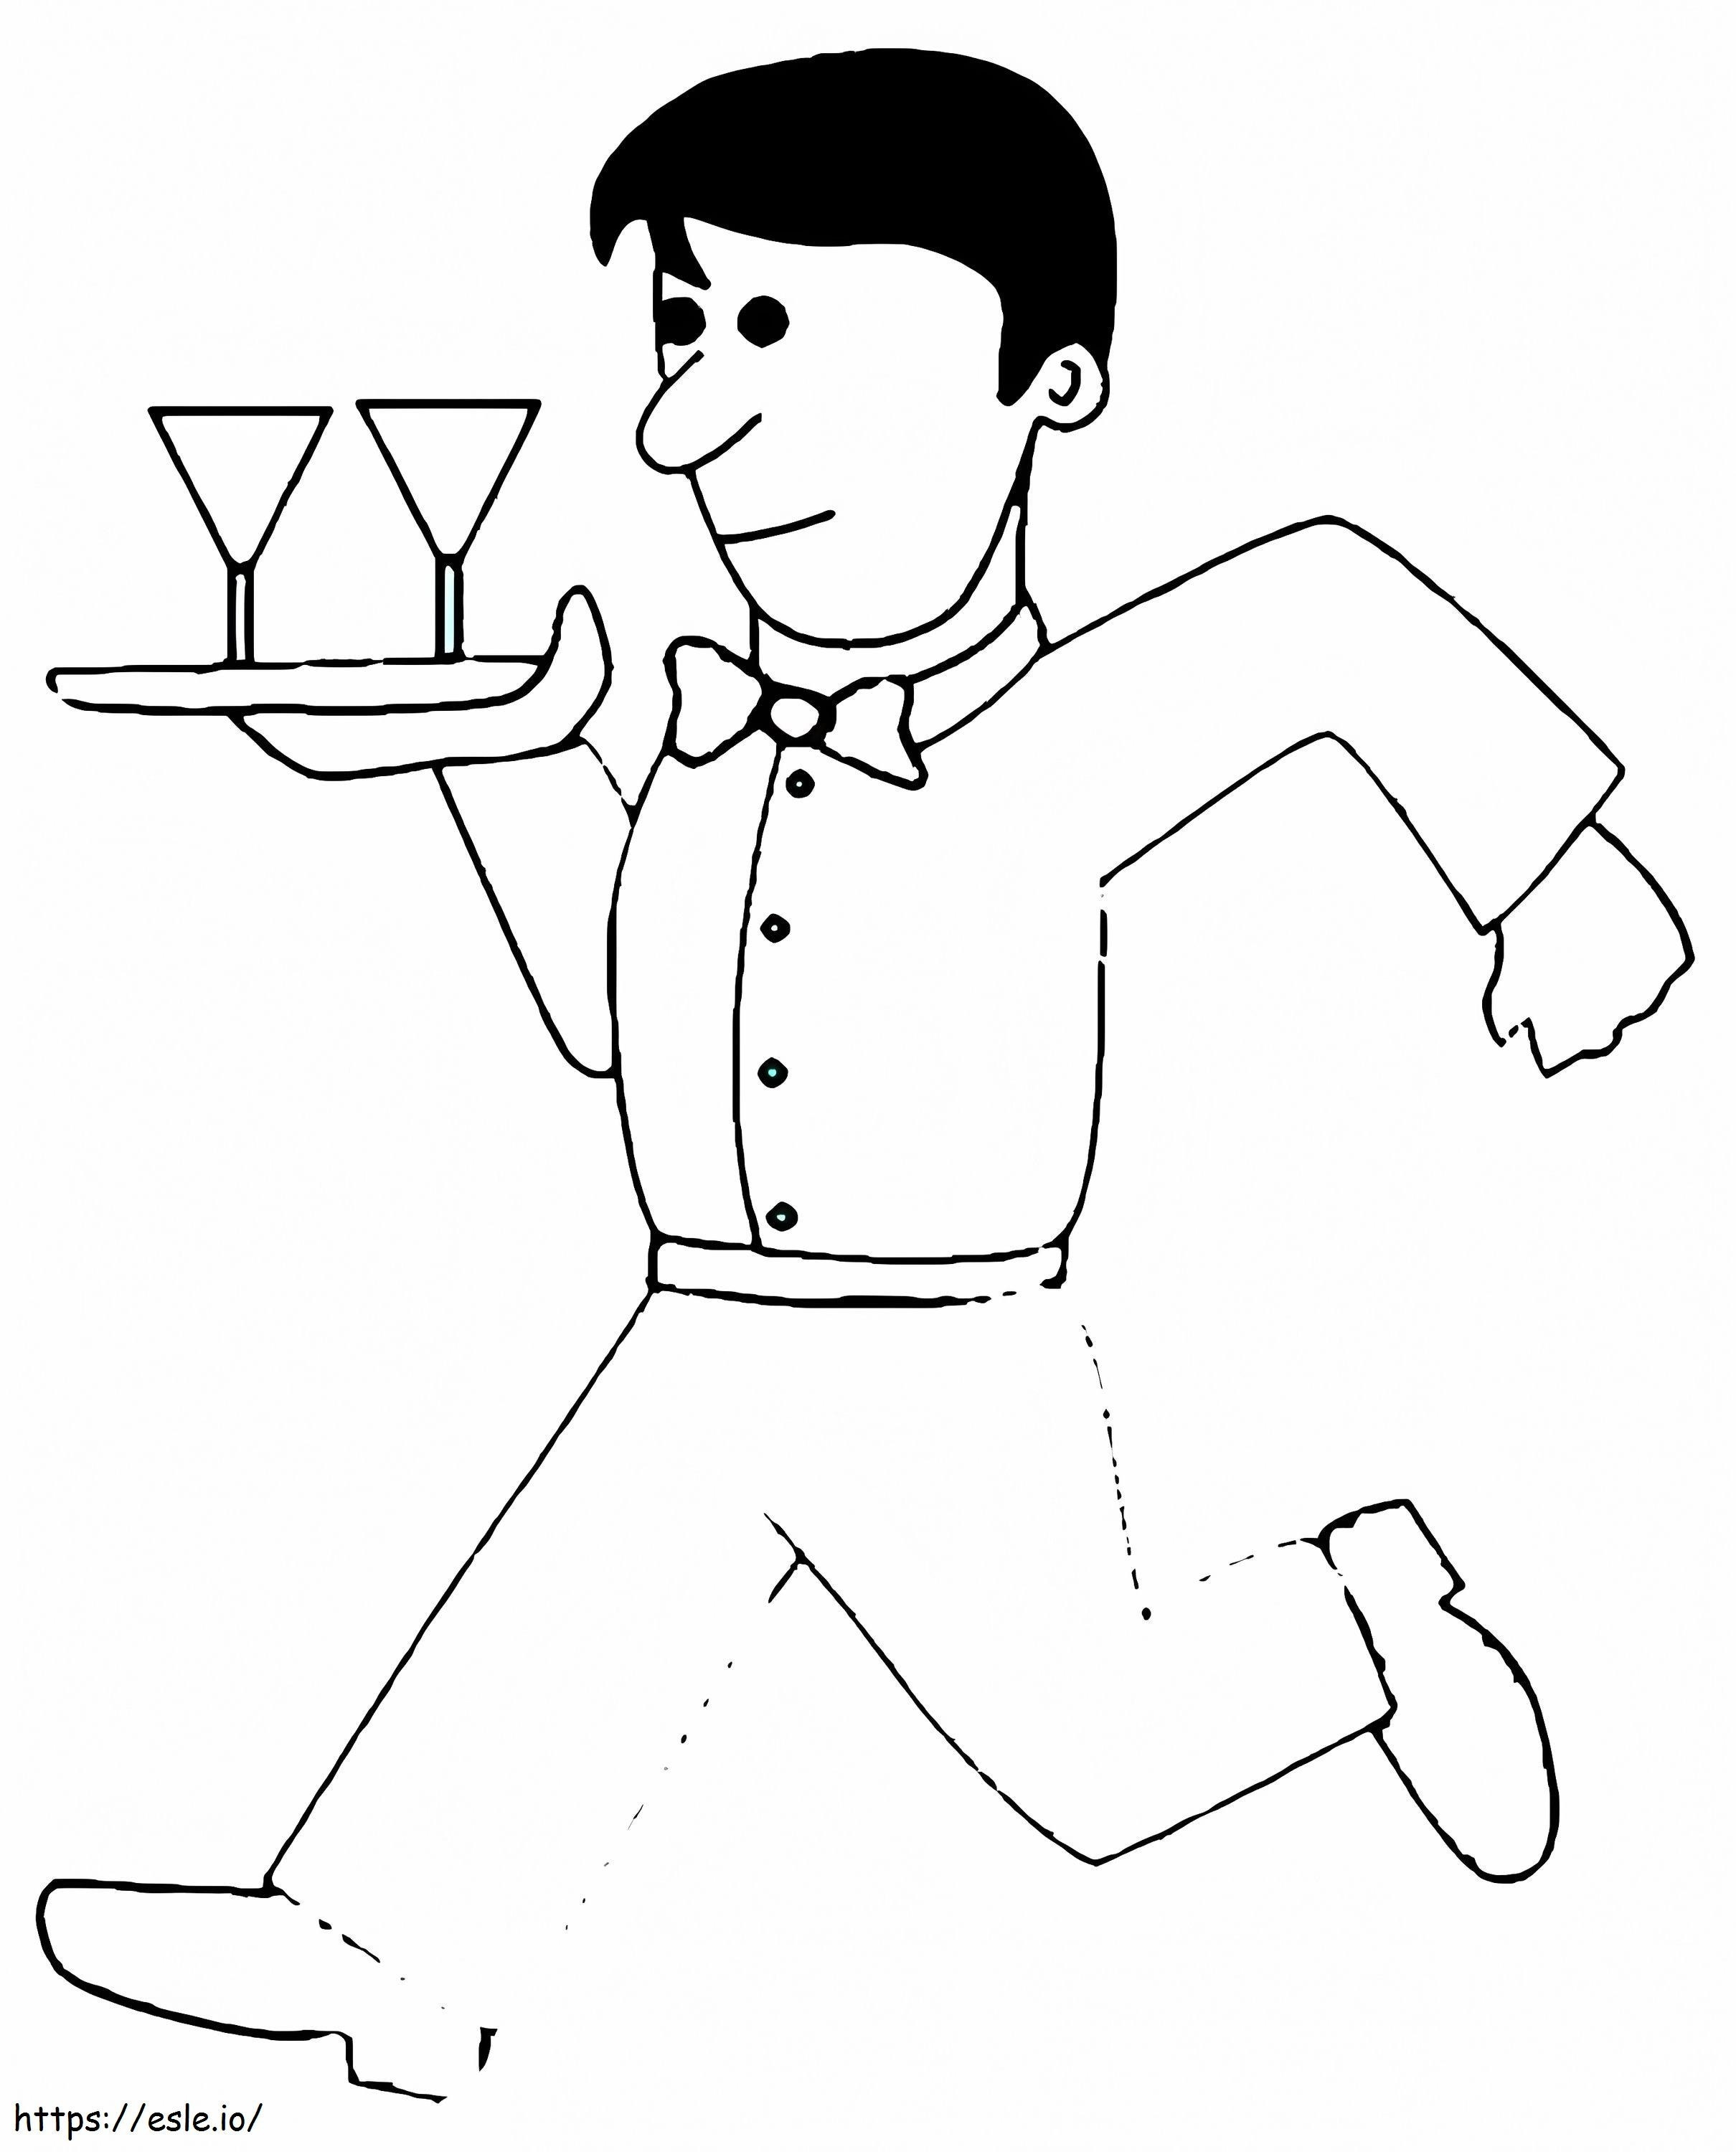 Chelnerul alergând de colorat